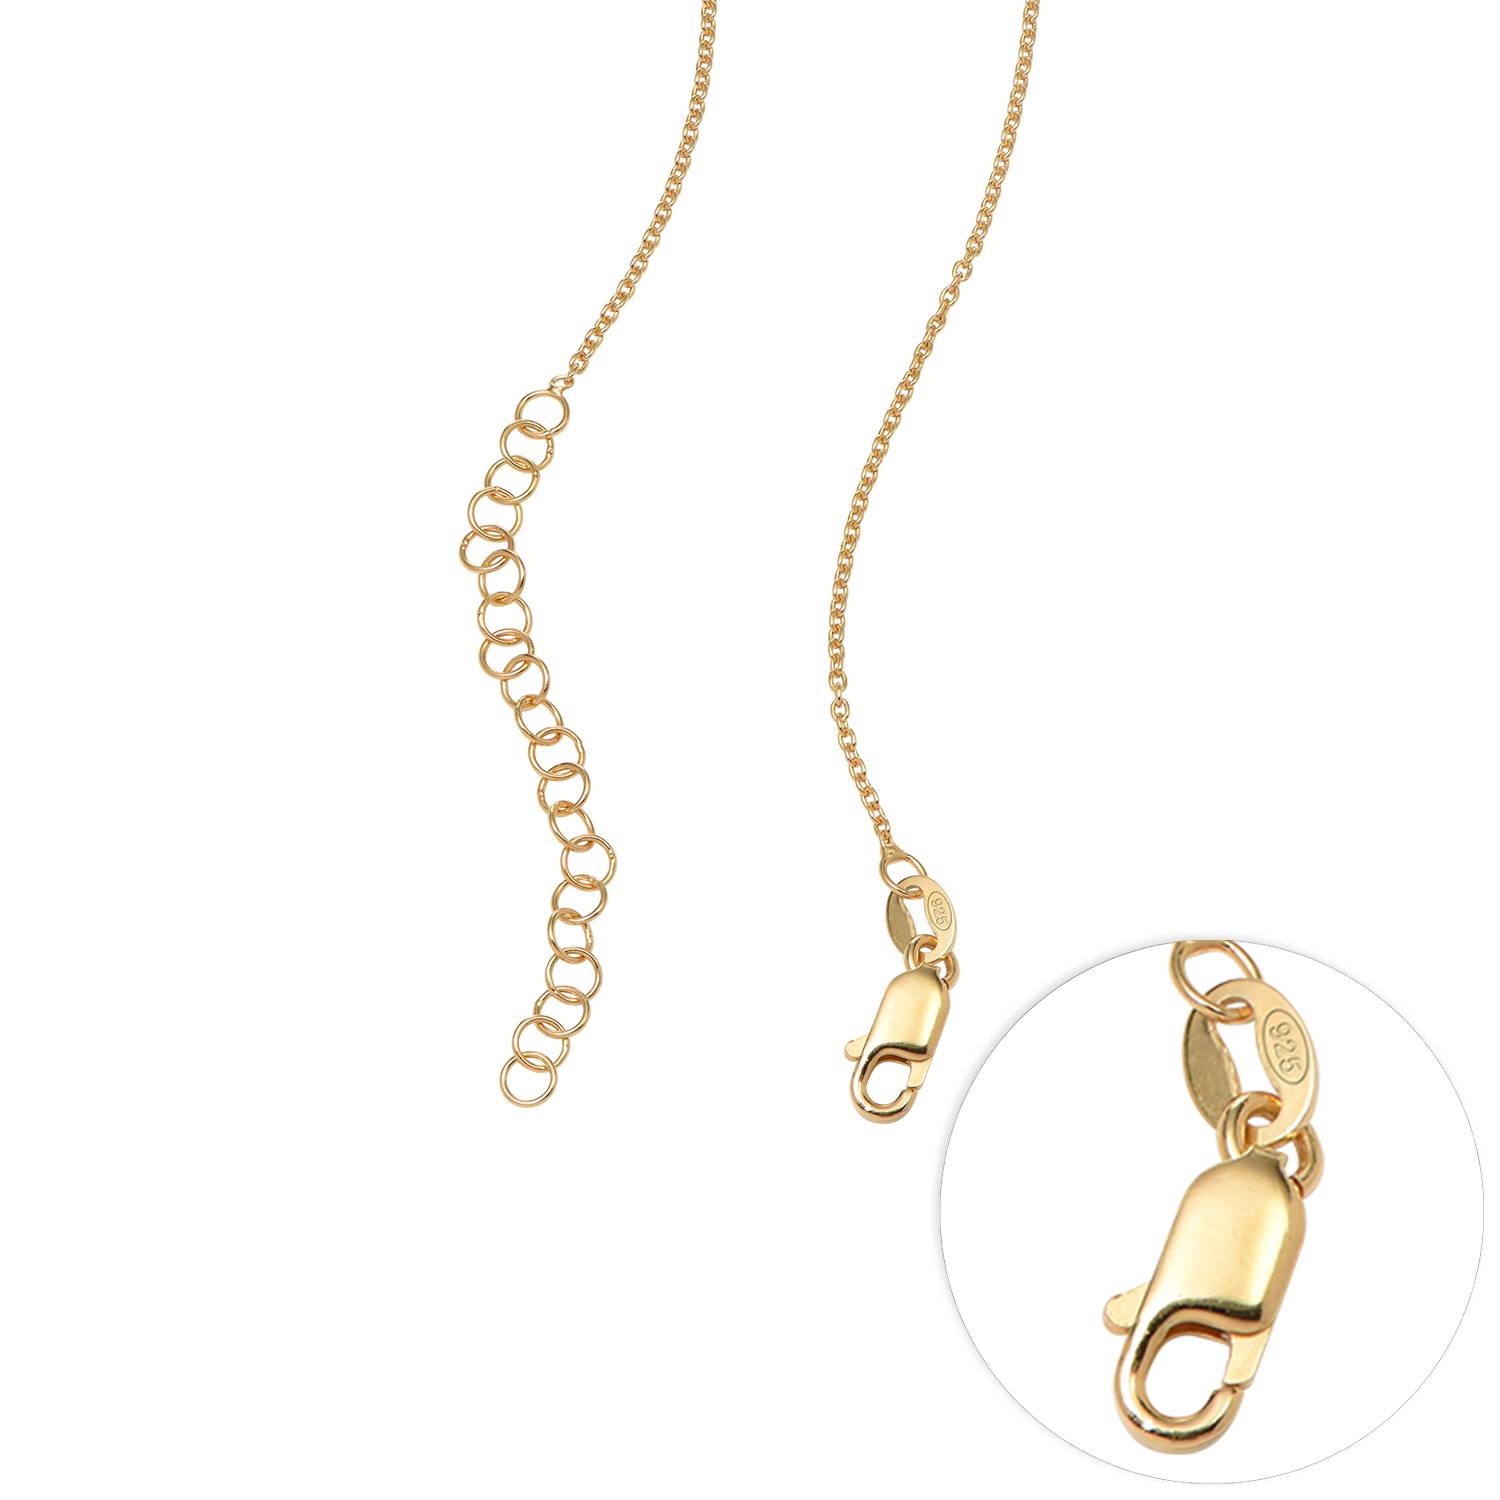 Floret Photo Pendant Necklace in 18ct Gold Vermeil-3 product photo